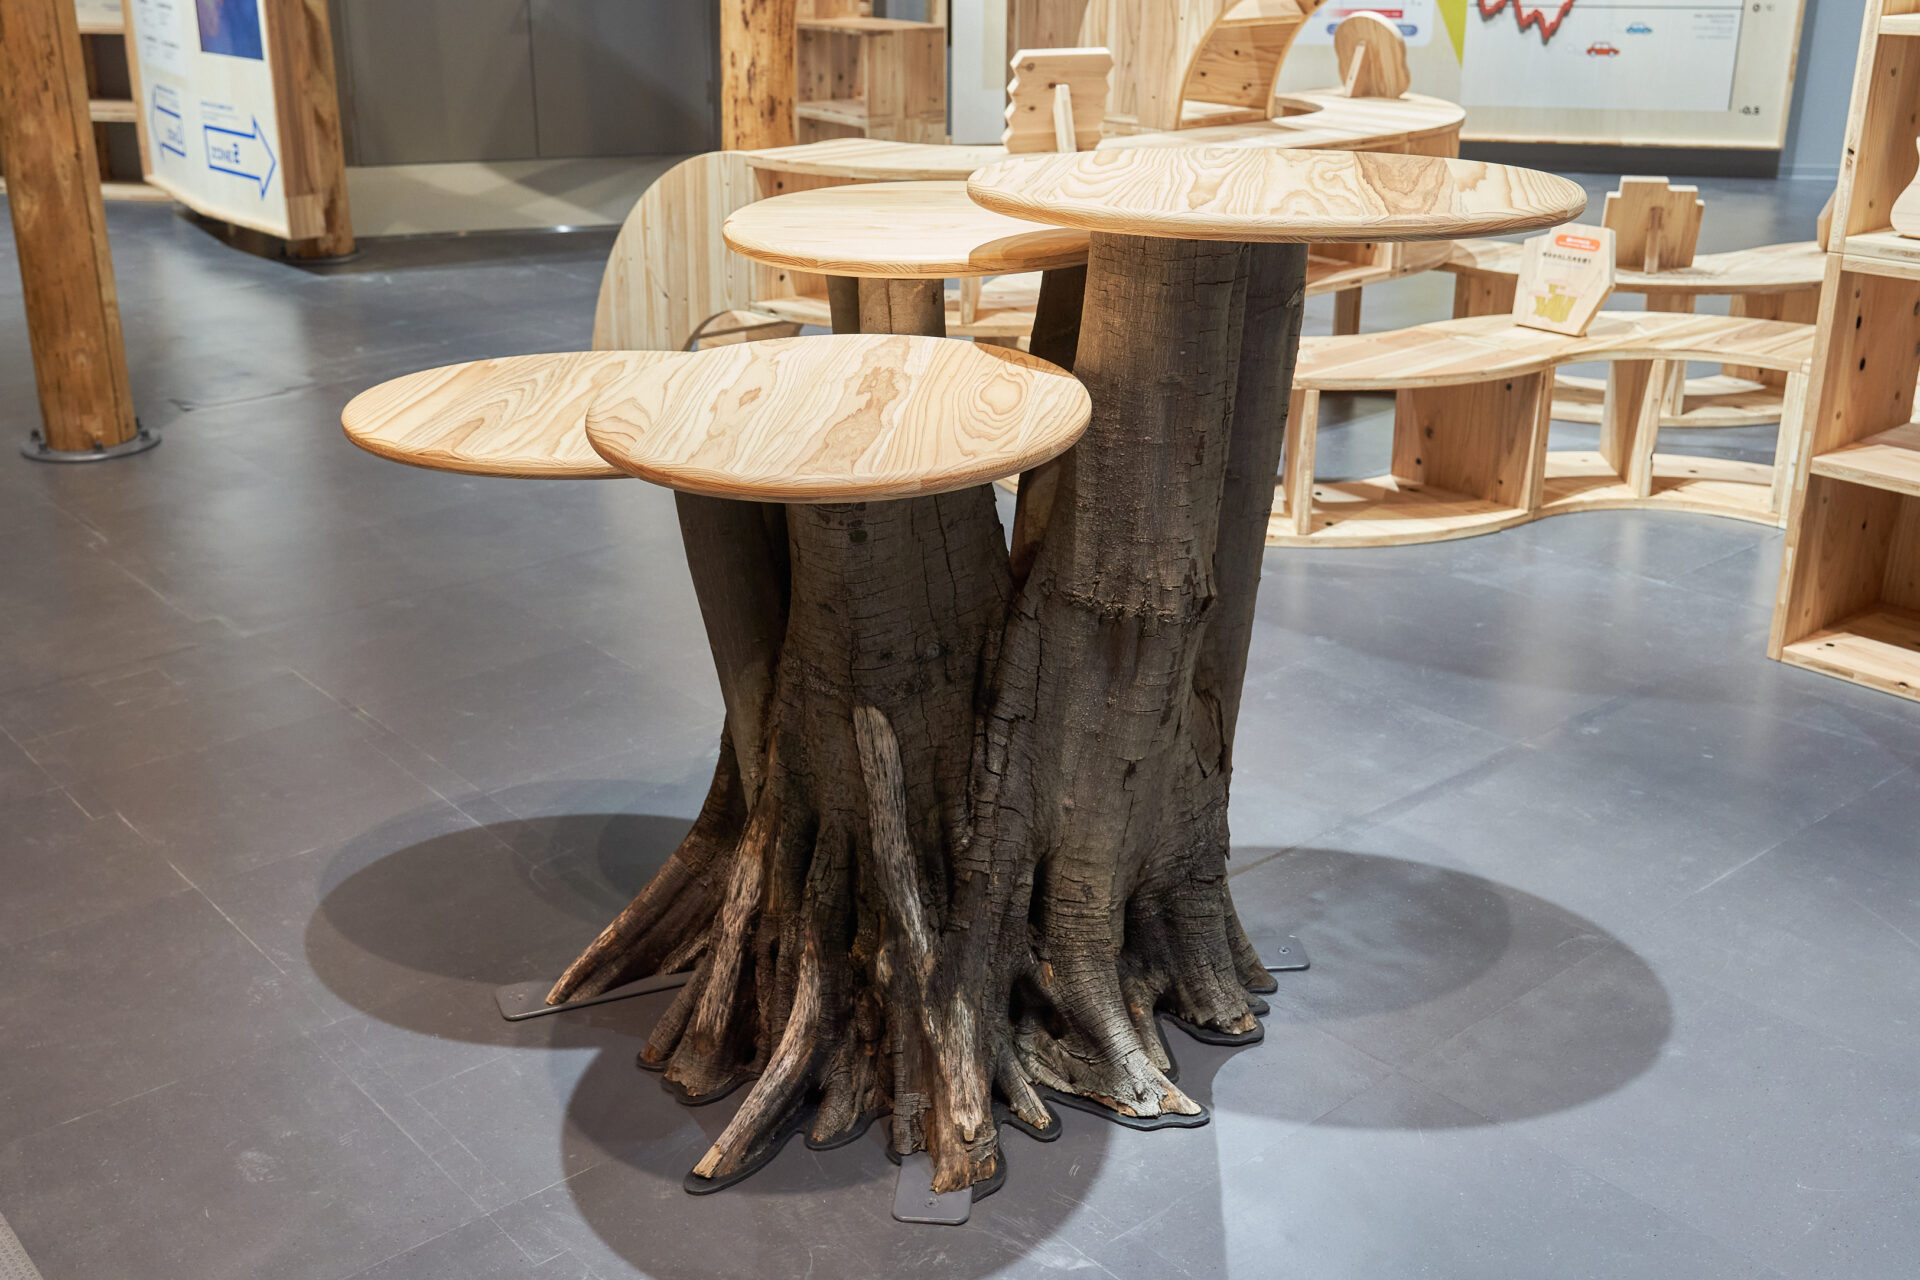 通常利用されることが少ない木材を使った机の写真。木のねもとの部分が４つの幹にわかれており、その上に平らな丸いてんばんが４つついています。ユニークなかたちです